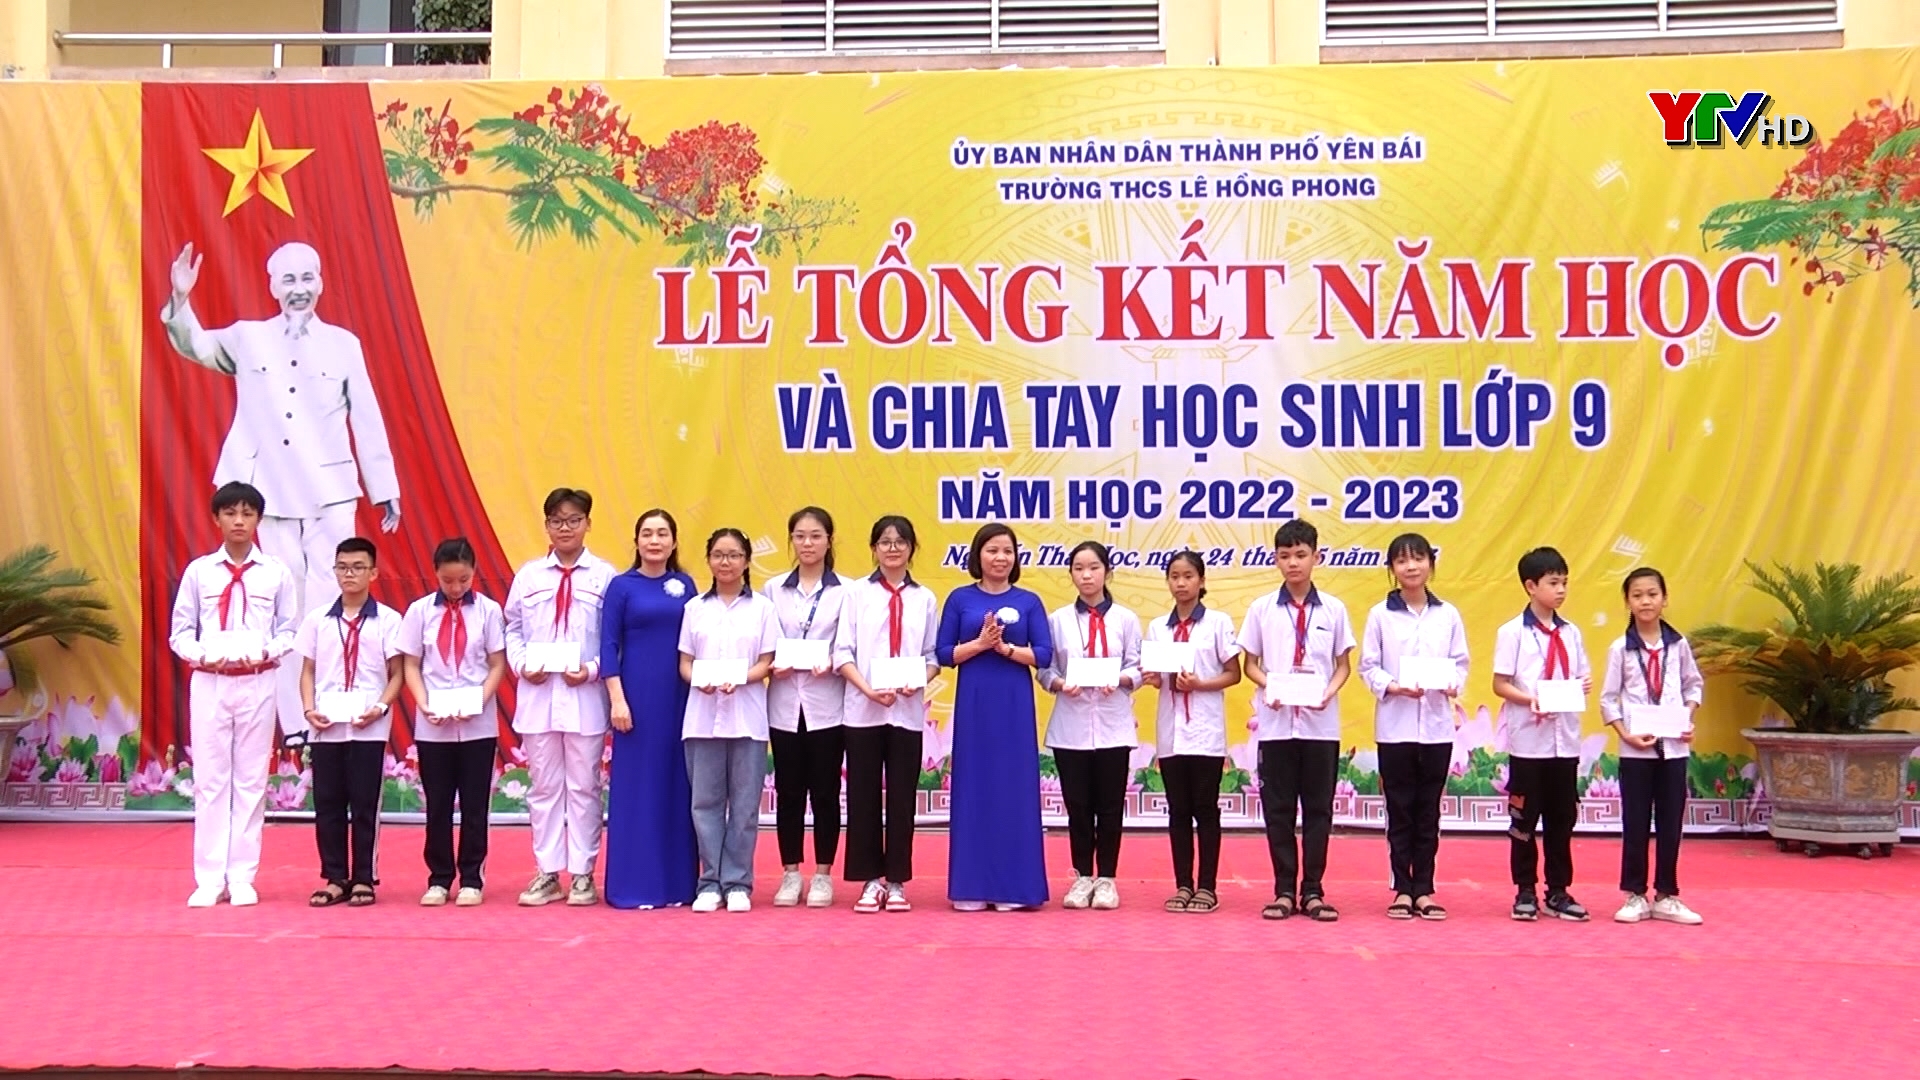 Trường THCS Lê Hồng Phong, TP Yên Bái: 71% học sinh có học lực khá, giỏi